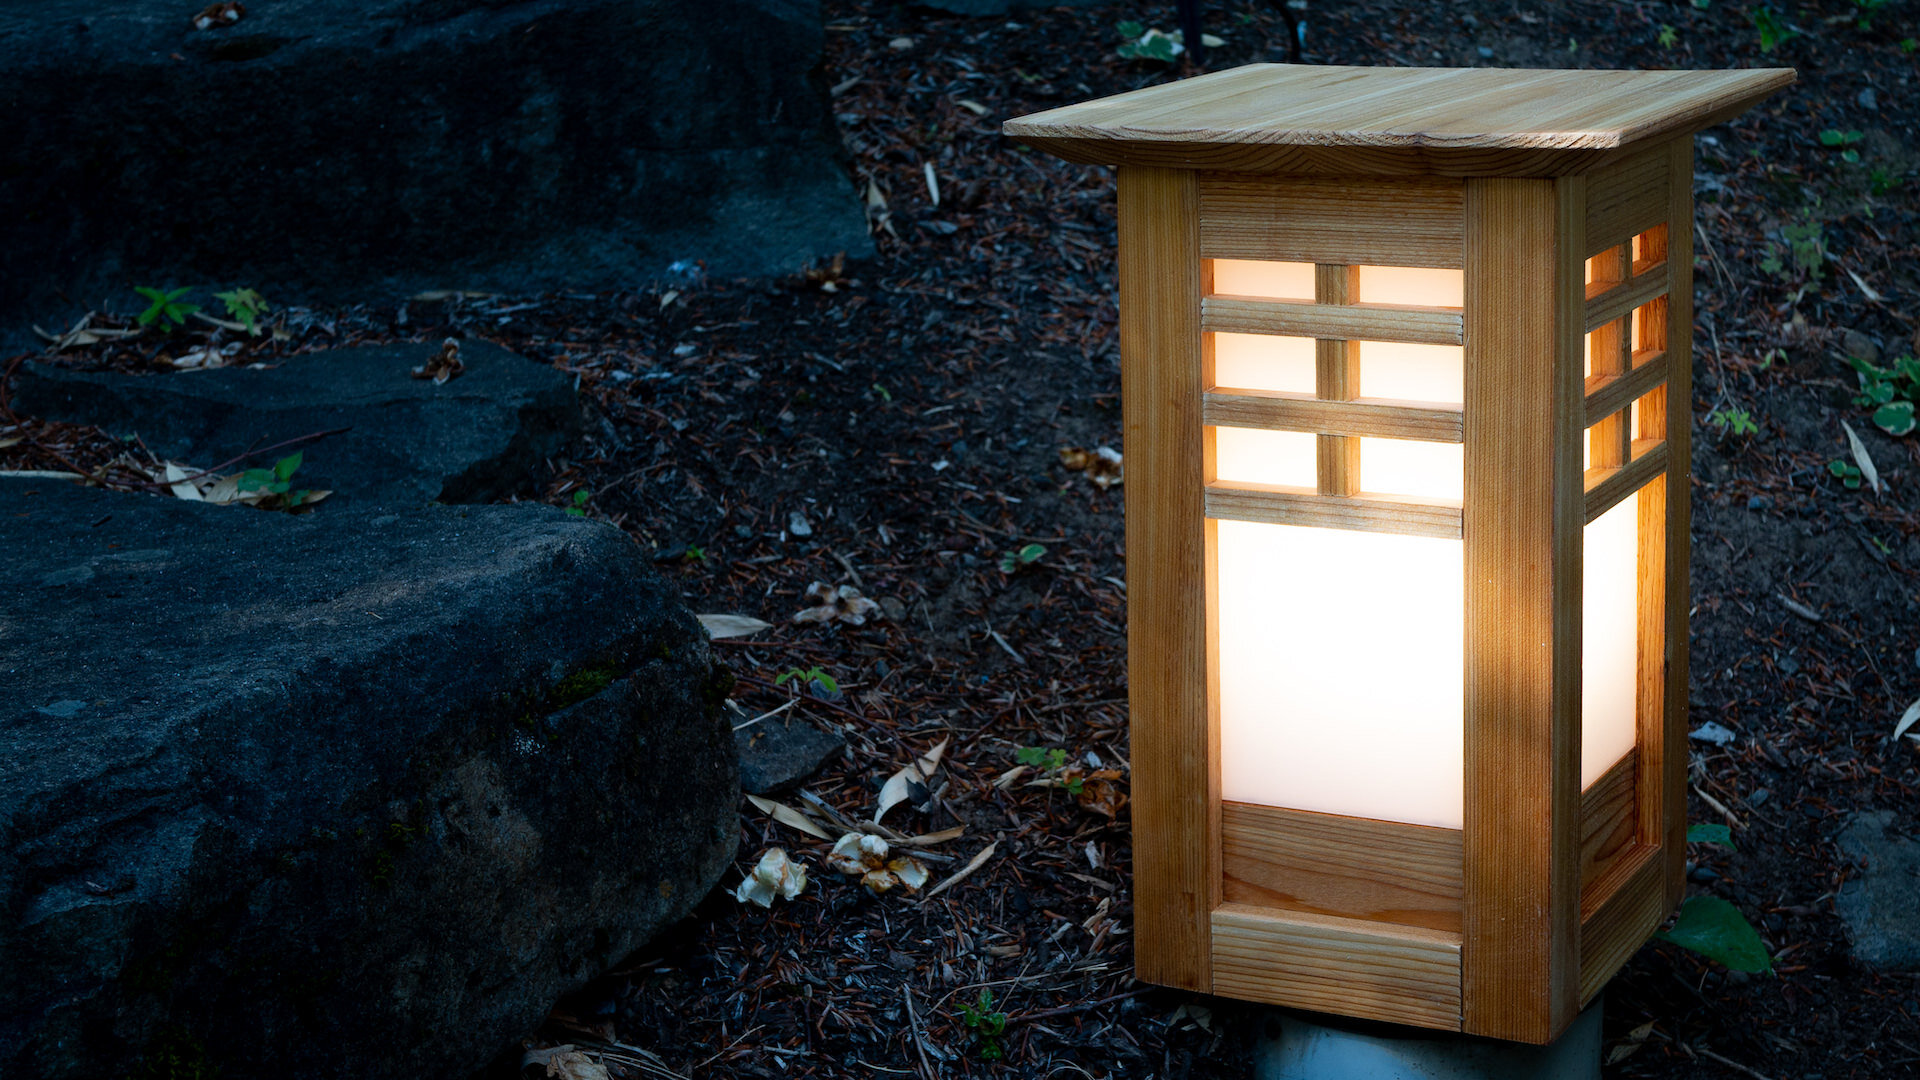 Outdoor Japanese Lantern Plans, Diy Japanese Garden Lanterns